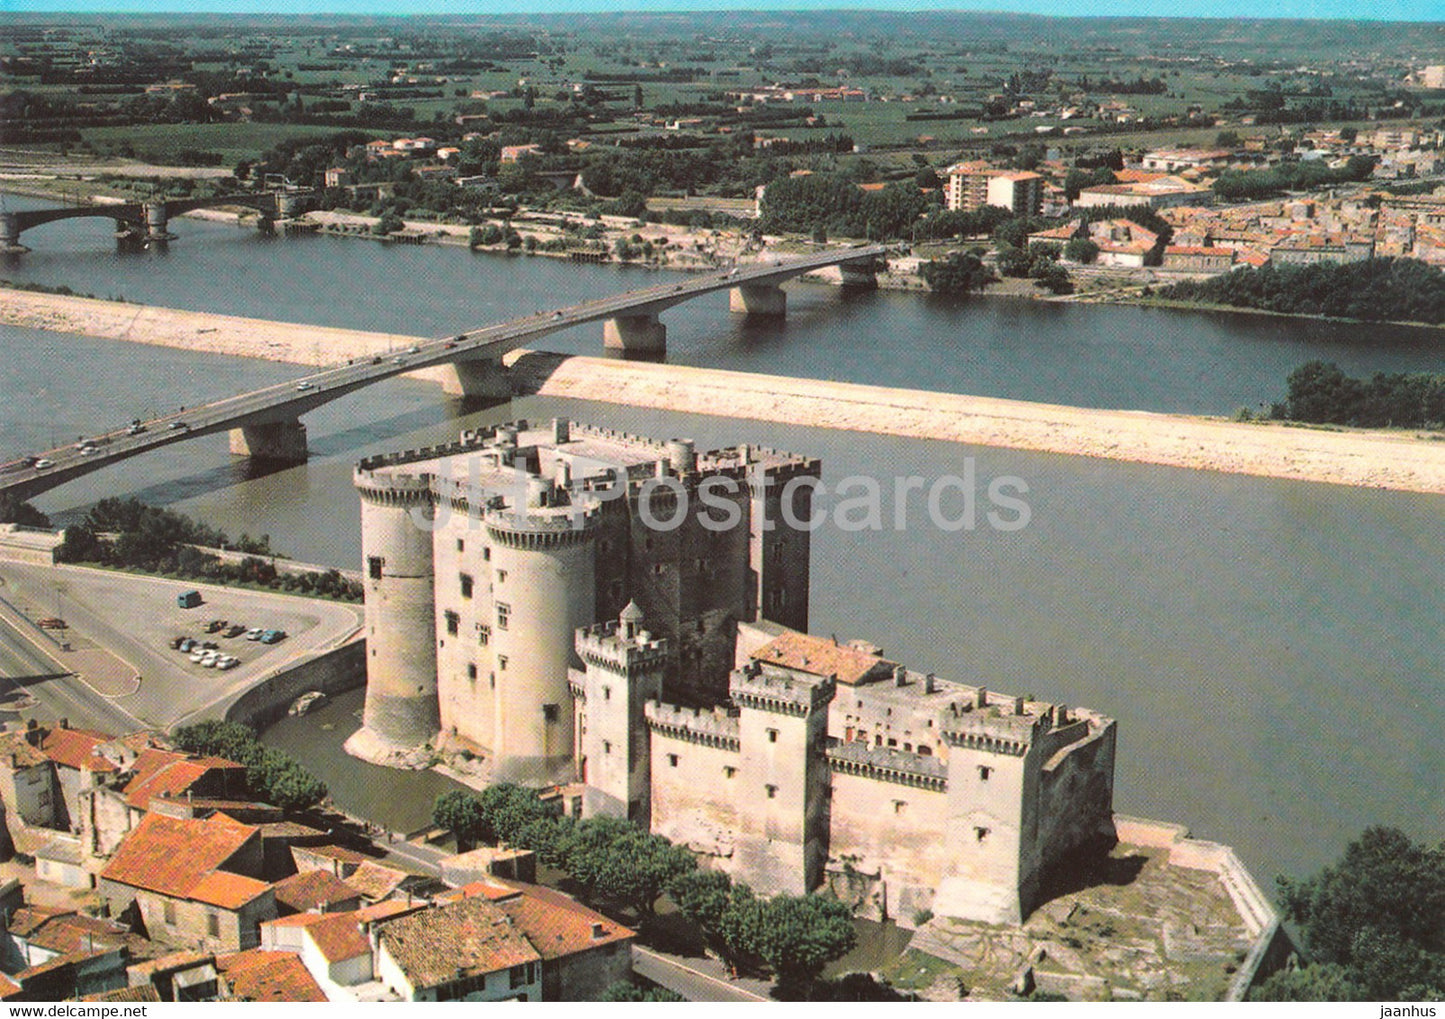 Tarascon - Vue Aerienne - Le Chateau du Roi Rene et le pont sur le Rhone - France - unused - JH Postcards